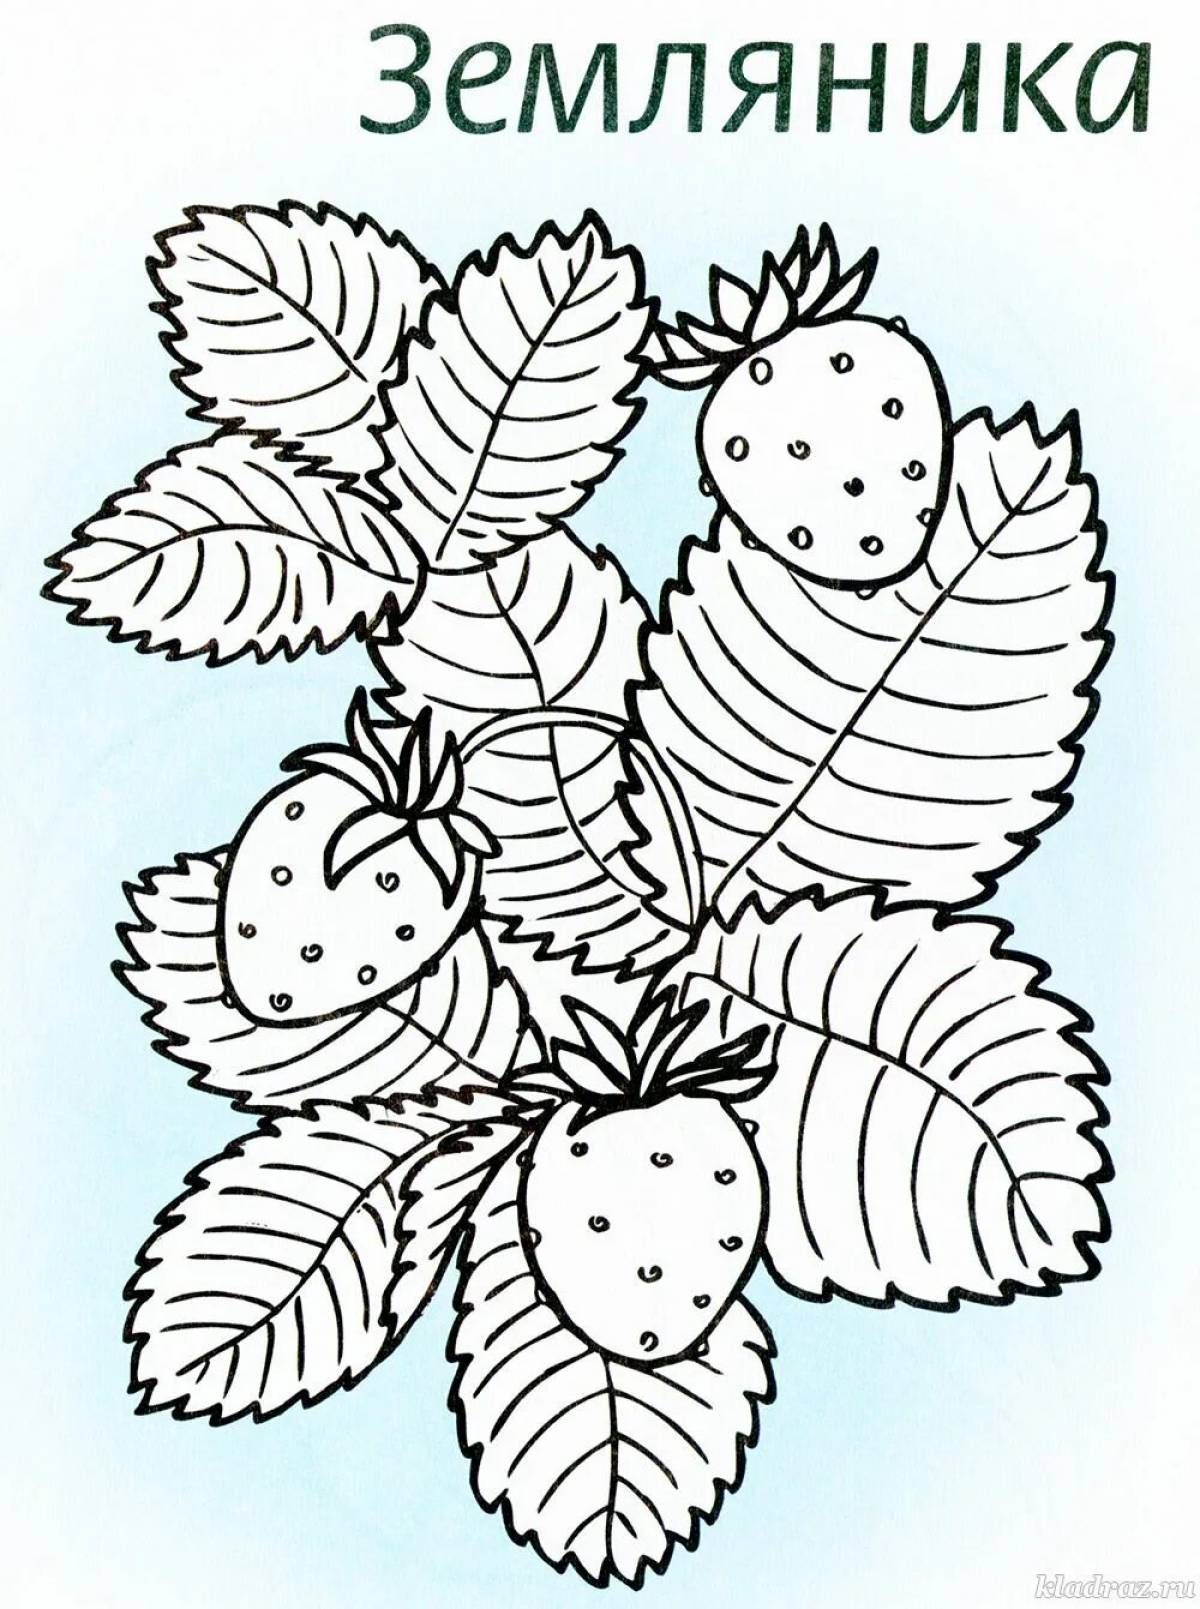 Оригинальные раскраски с лекарственными растениями для дошкольников